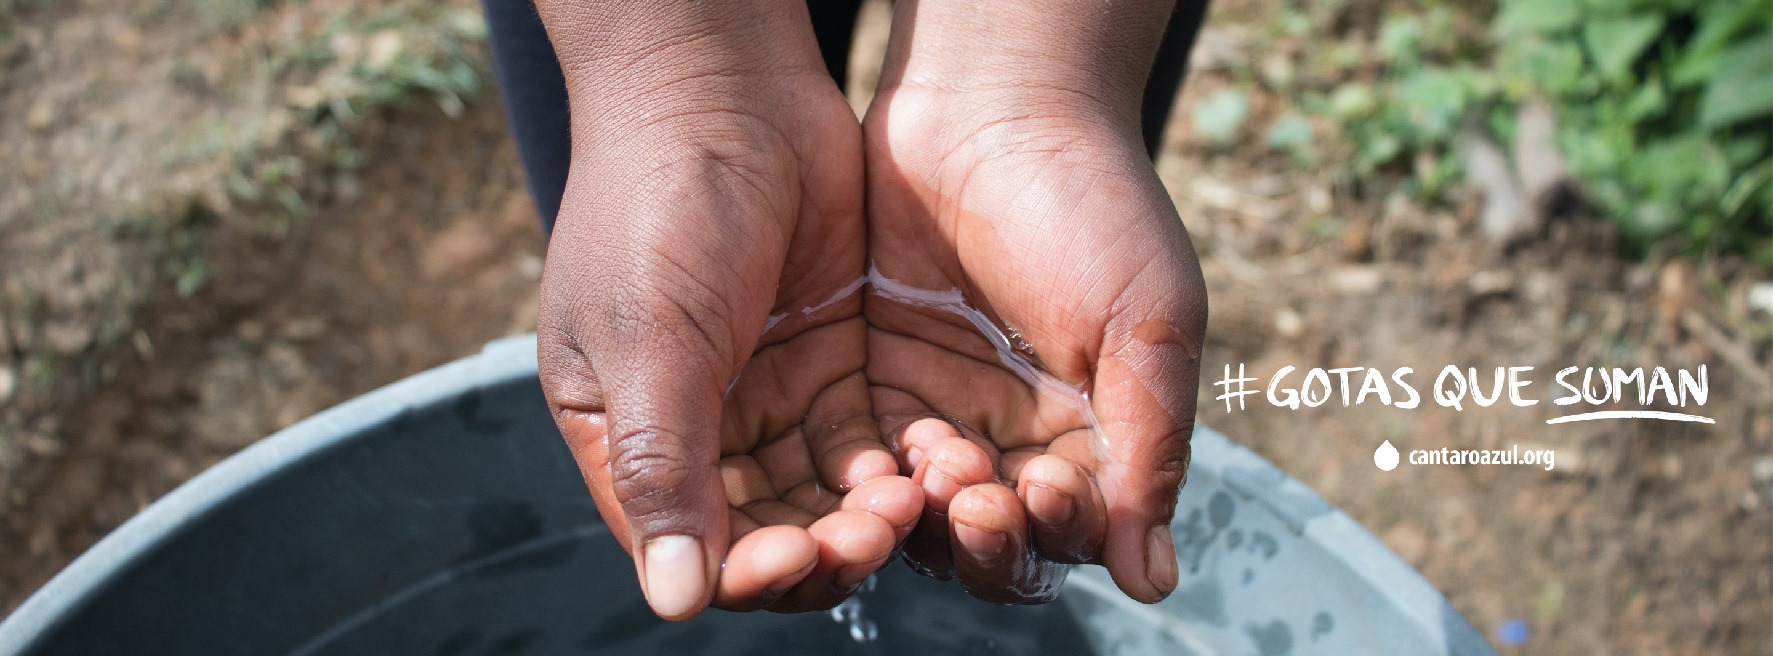 Cántaro Azul: Contribuye a mejorar la salud y calidad de vida de las personas sin acceso a agua